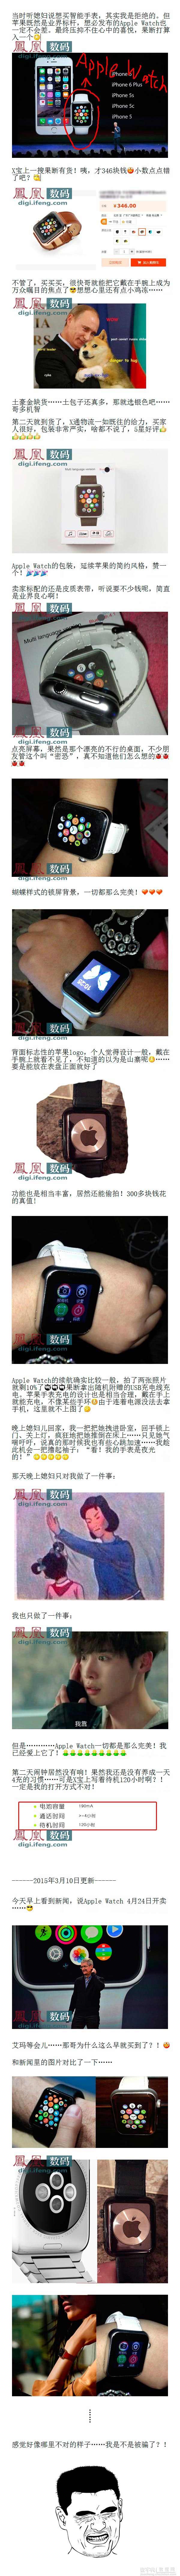 山寨版Apple Watch已上市开卖 不同颜色和腕带可供选择(图)2